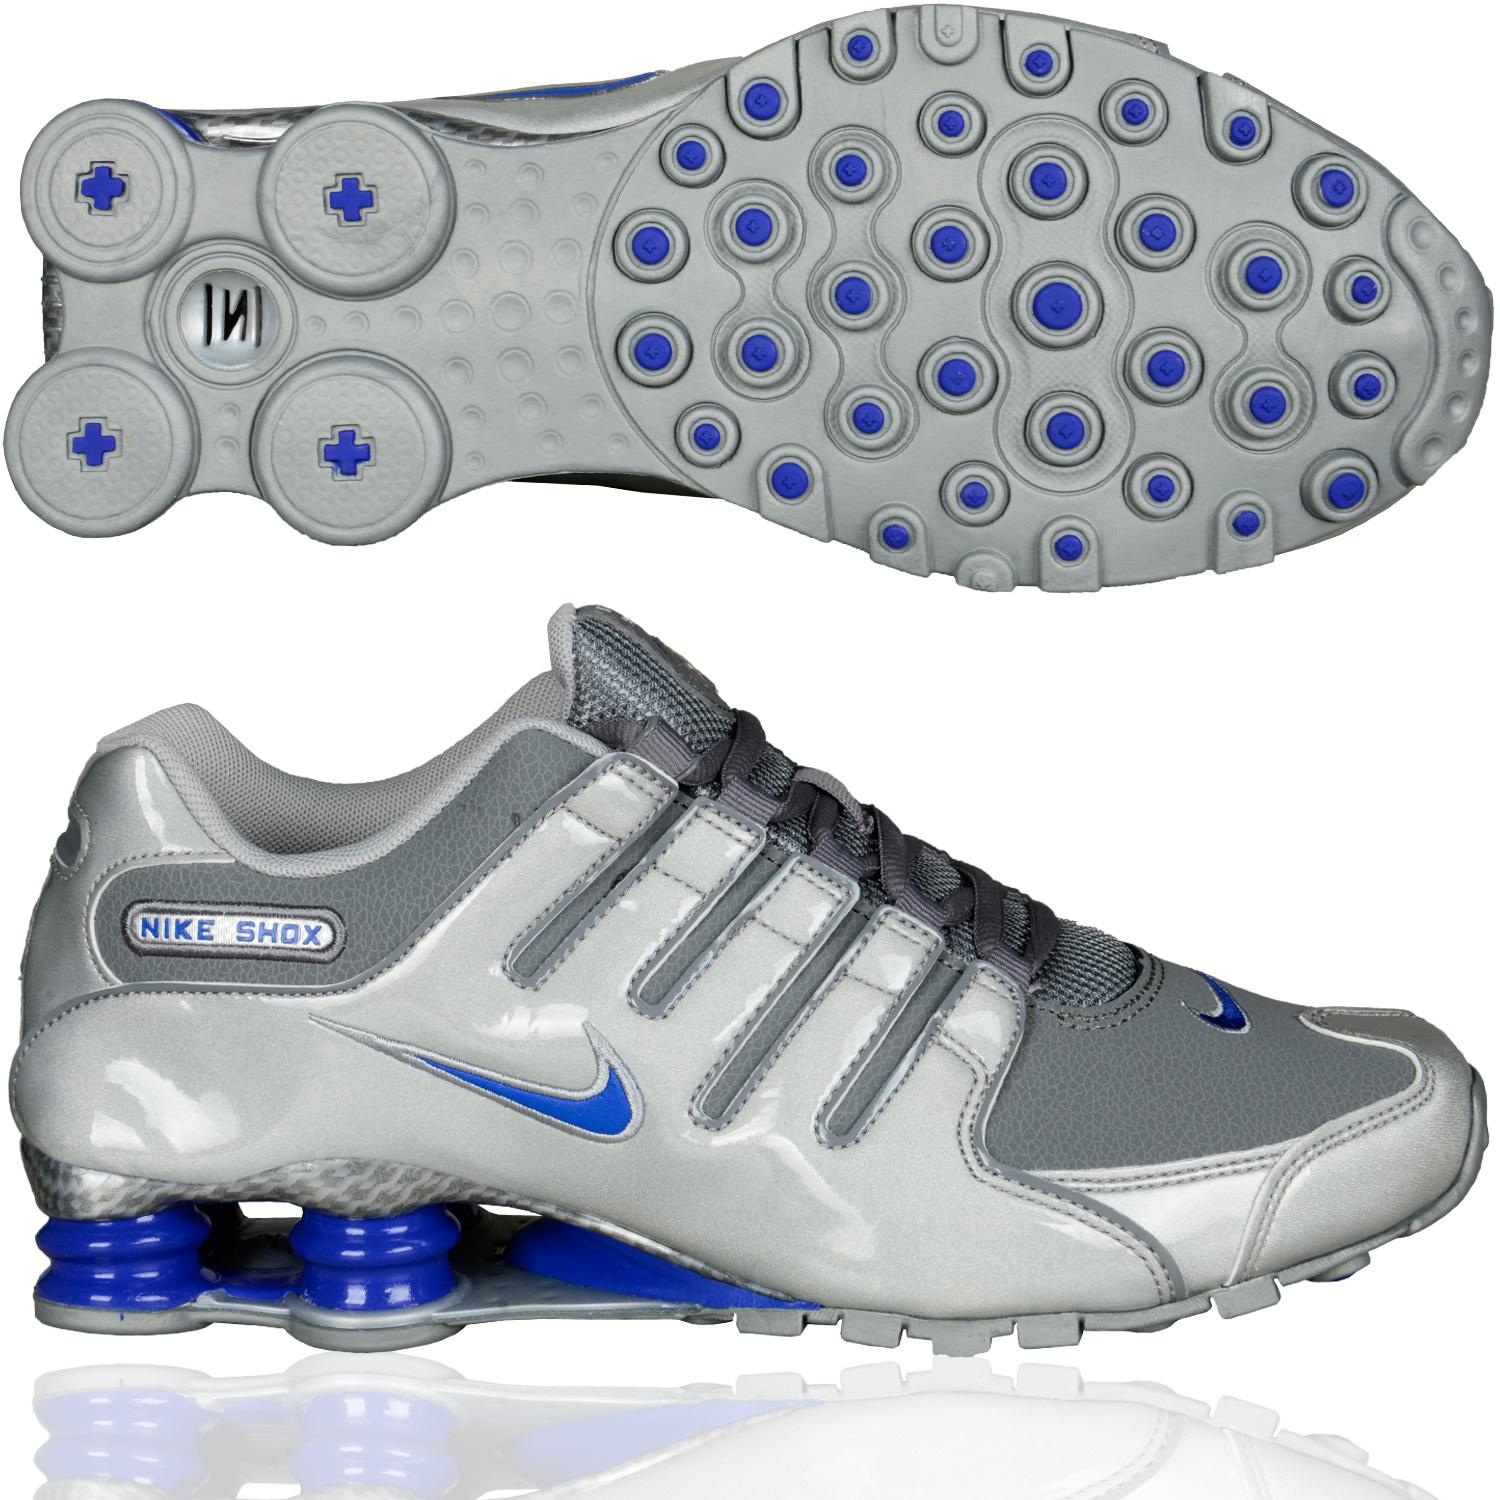 Foto Nike Shoe Nike Shox Nz Eu La Zapatilla De Deporte Bajo Gris Azul